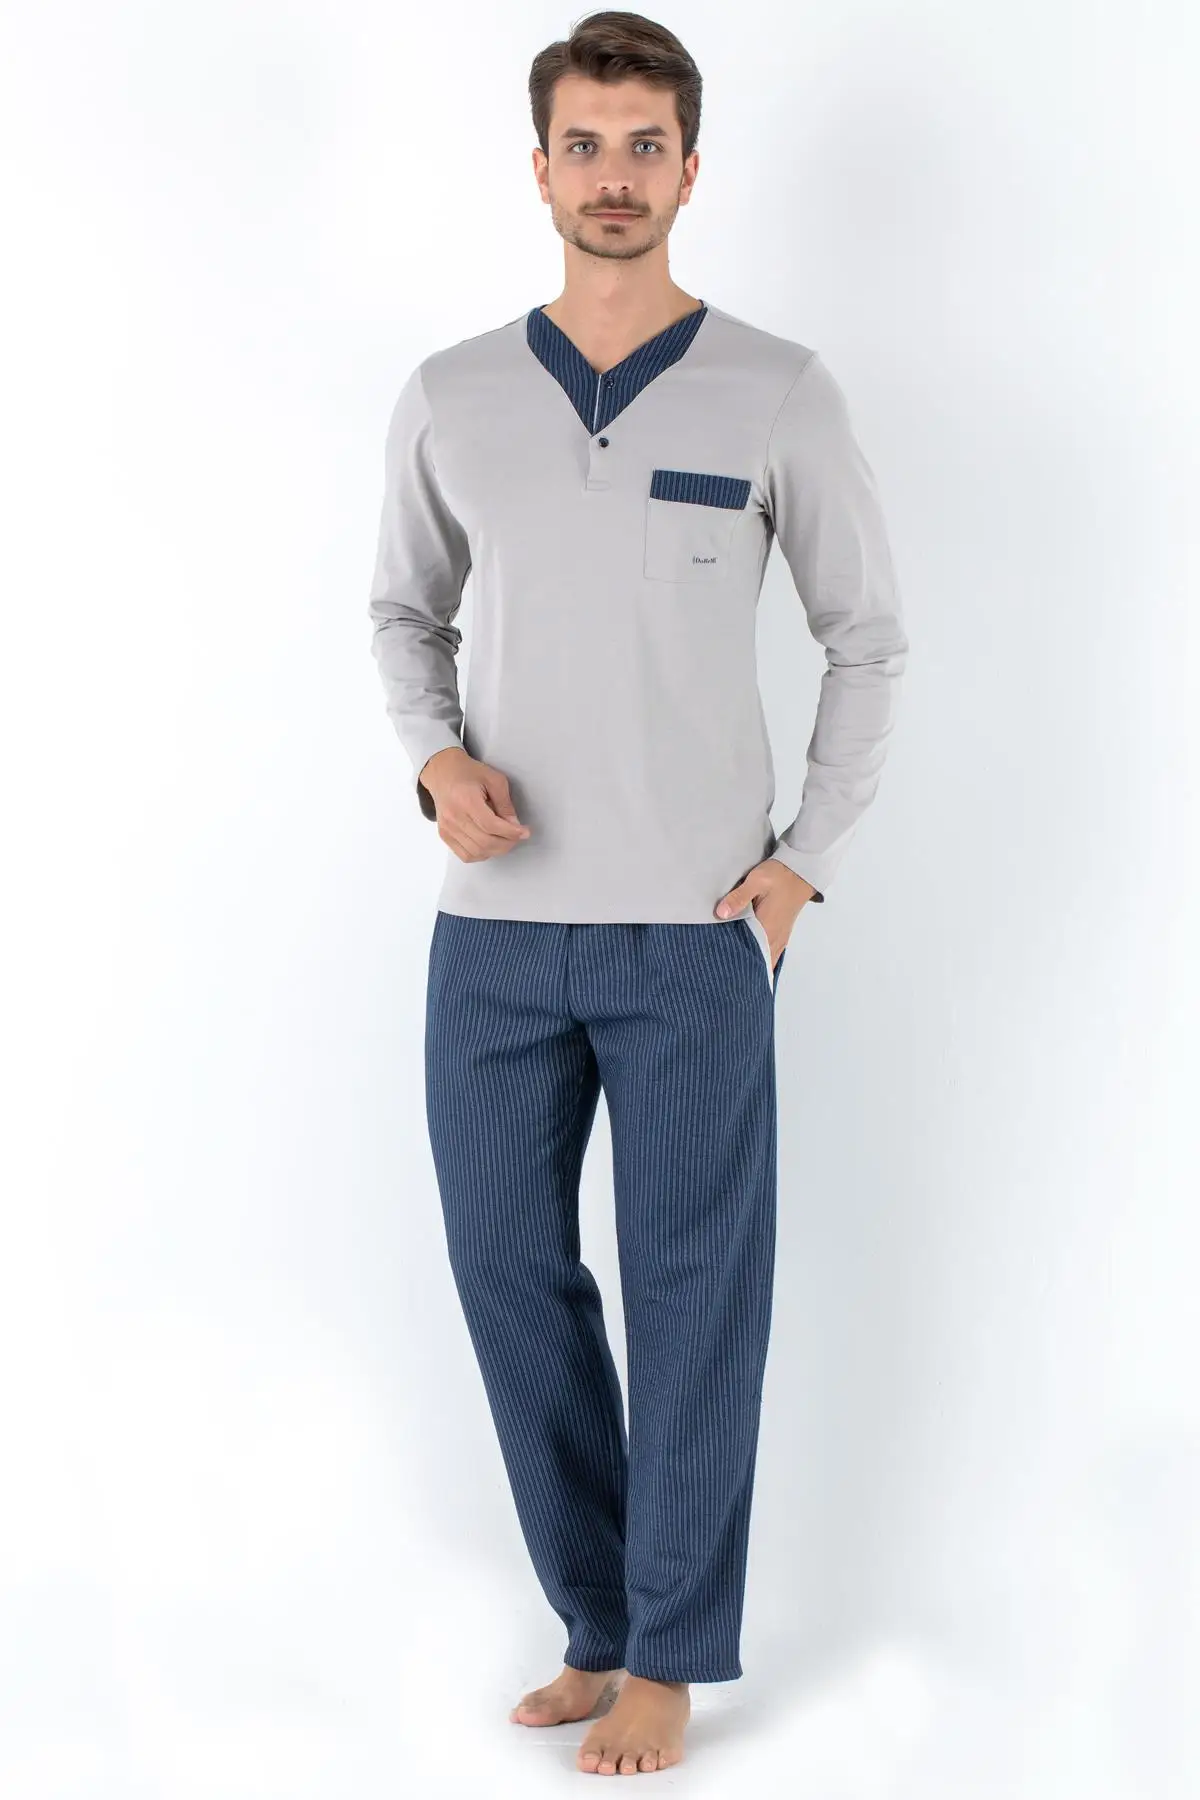 Комплект мужской одежды для сна из 2 предметов, ночные рубашки, пижамы, рубашки, верх и брюки, ночная одежда, пижамы от AliExpress RU&CIS NEW